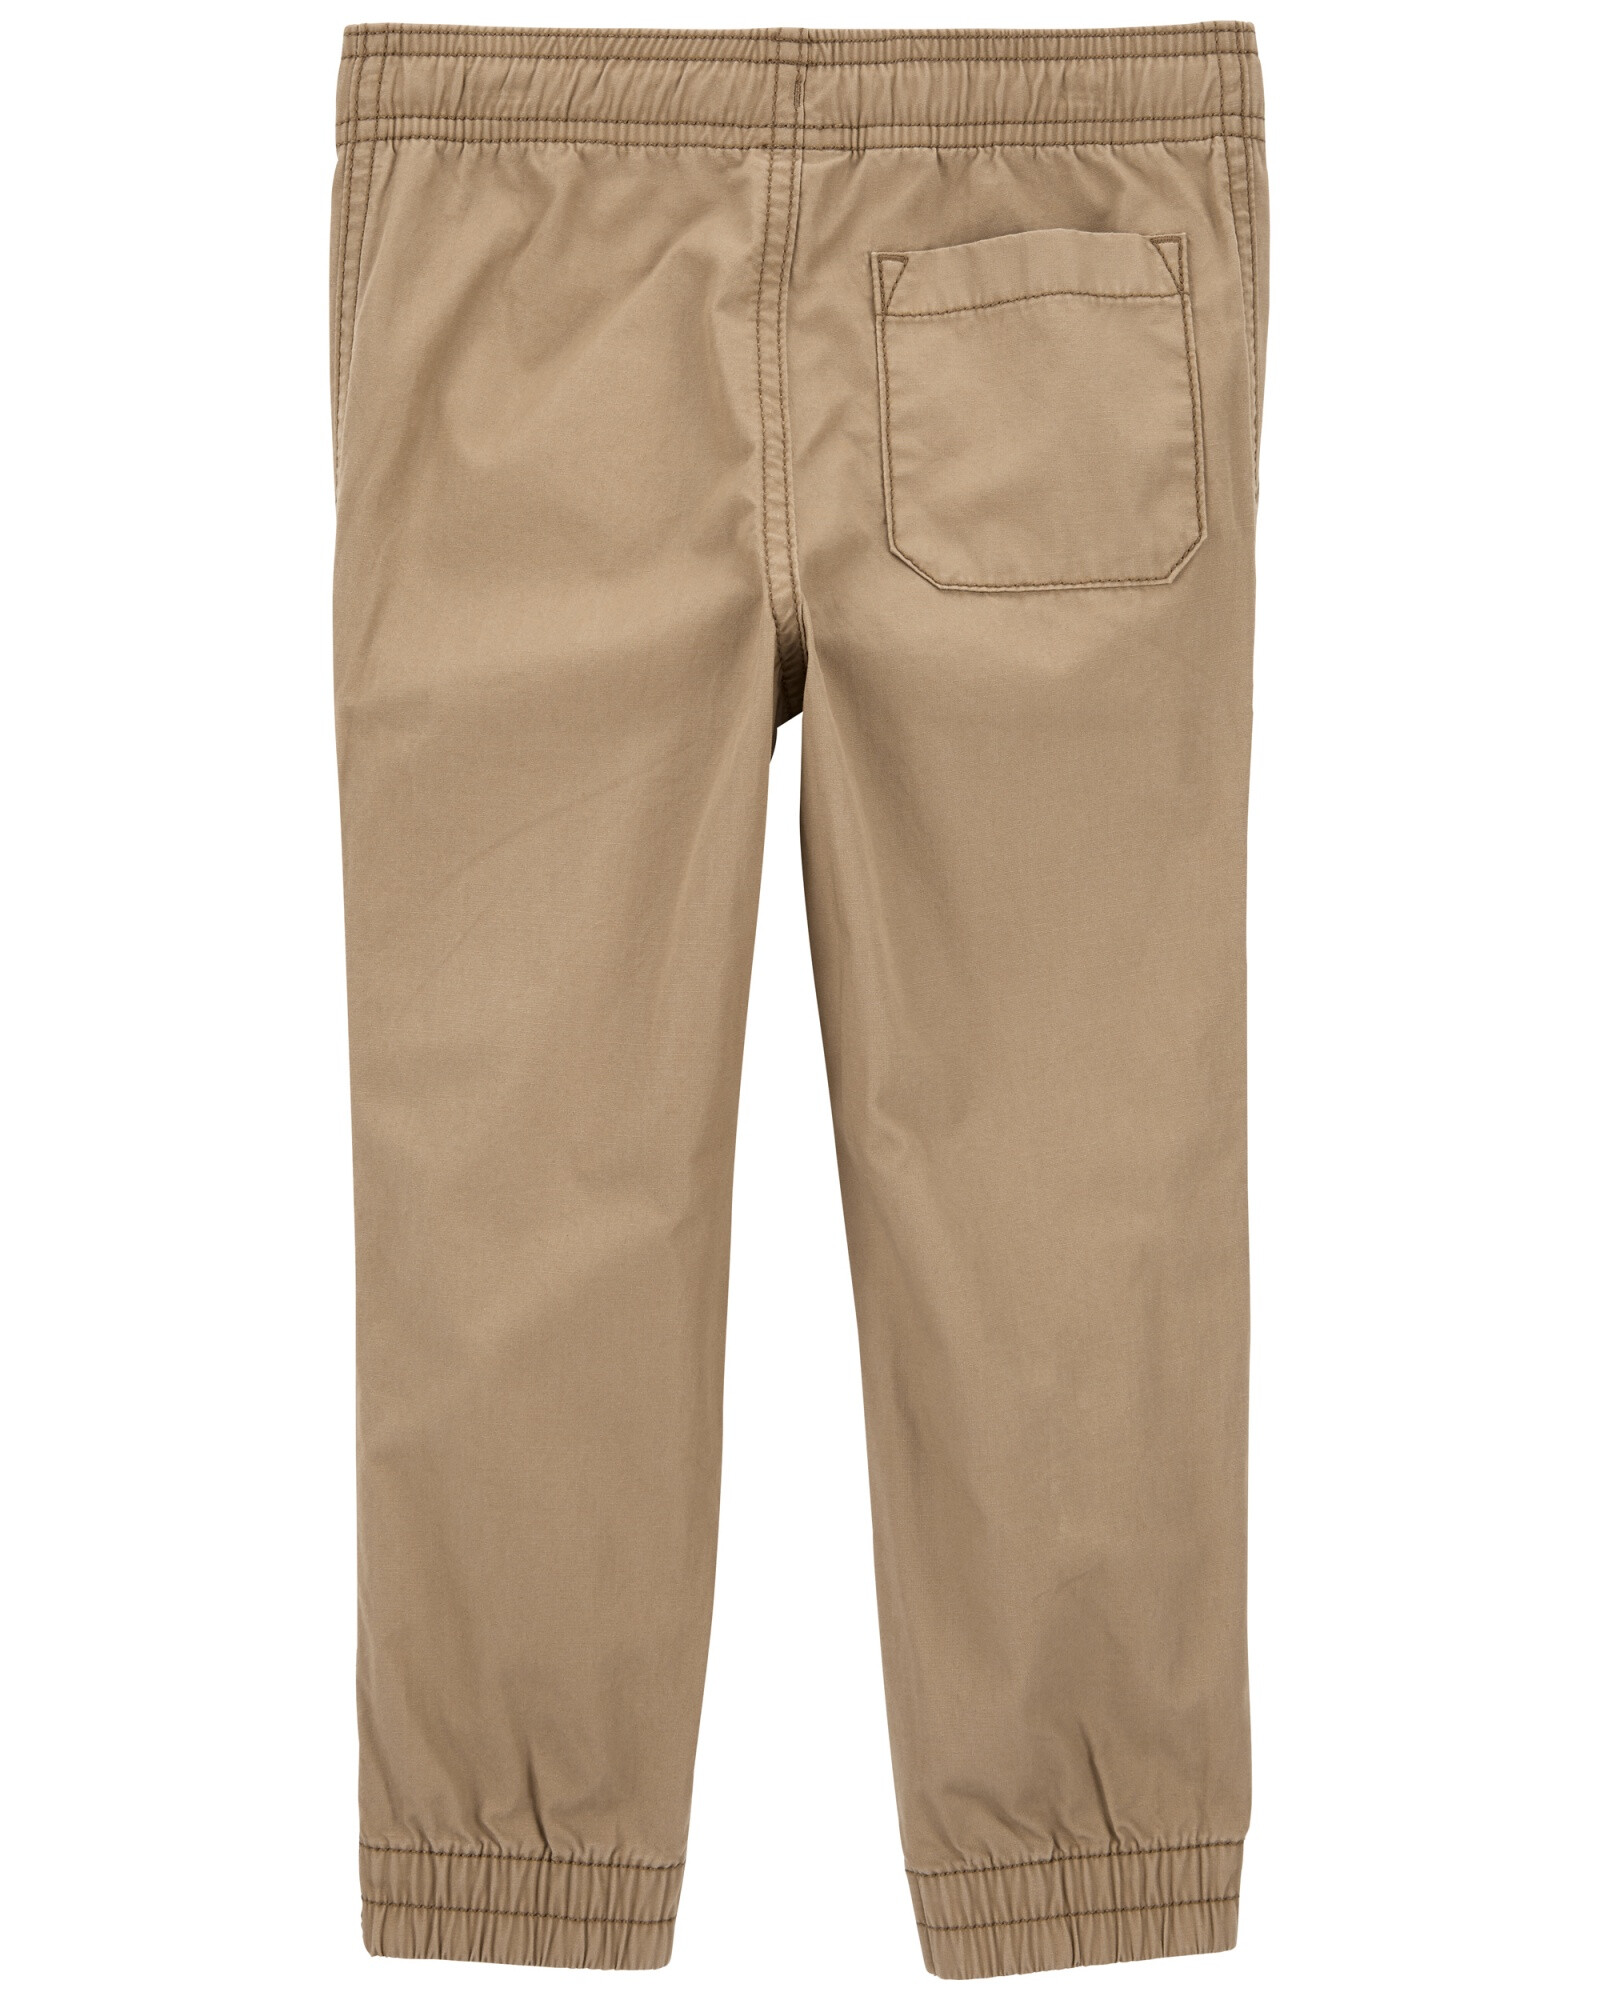 Pantalón de popelina khaki. Talles 6-24M Sin color